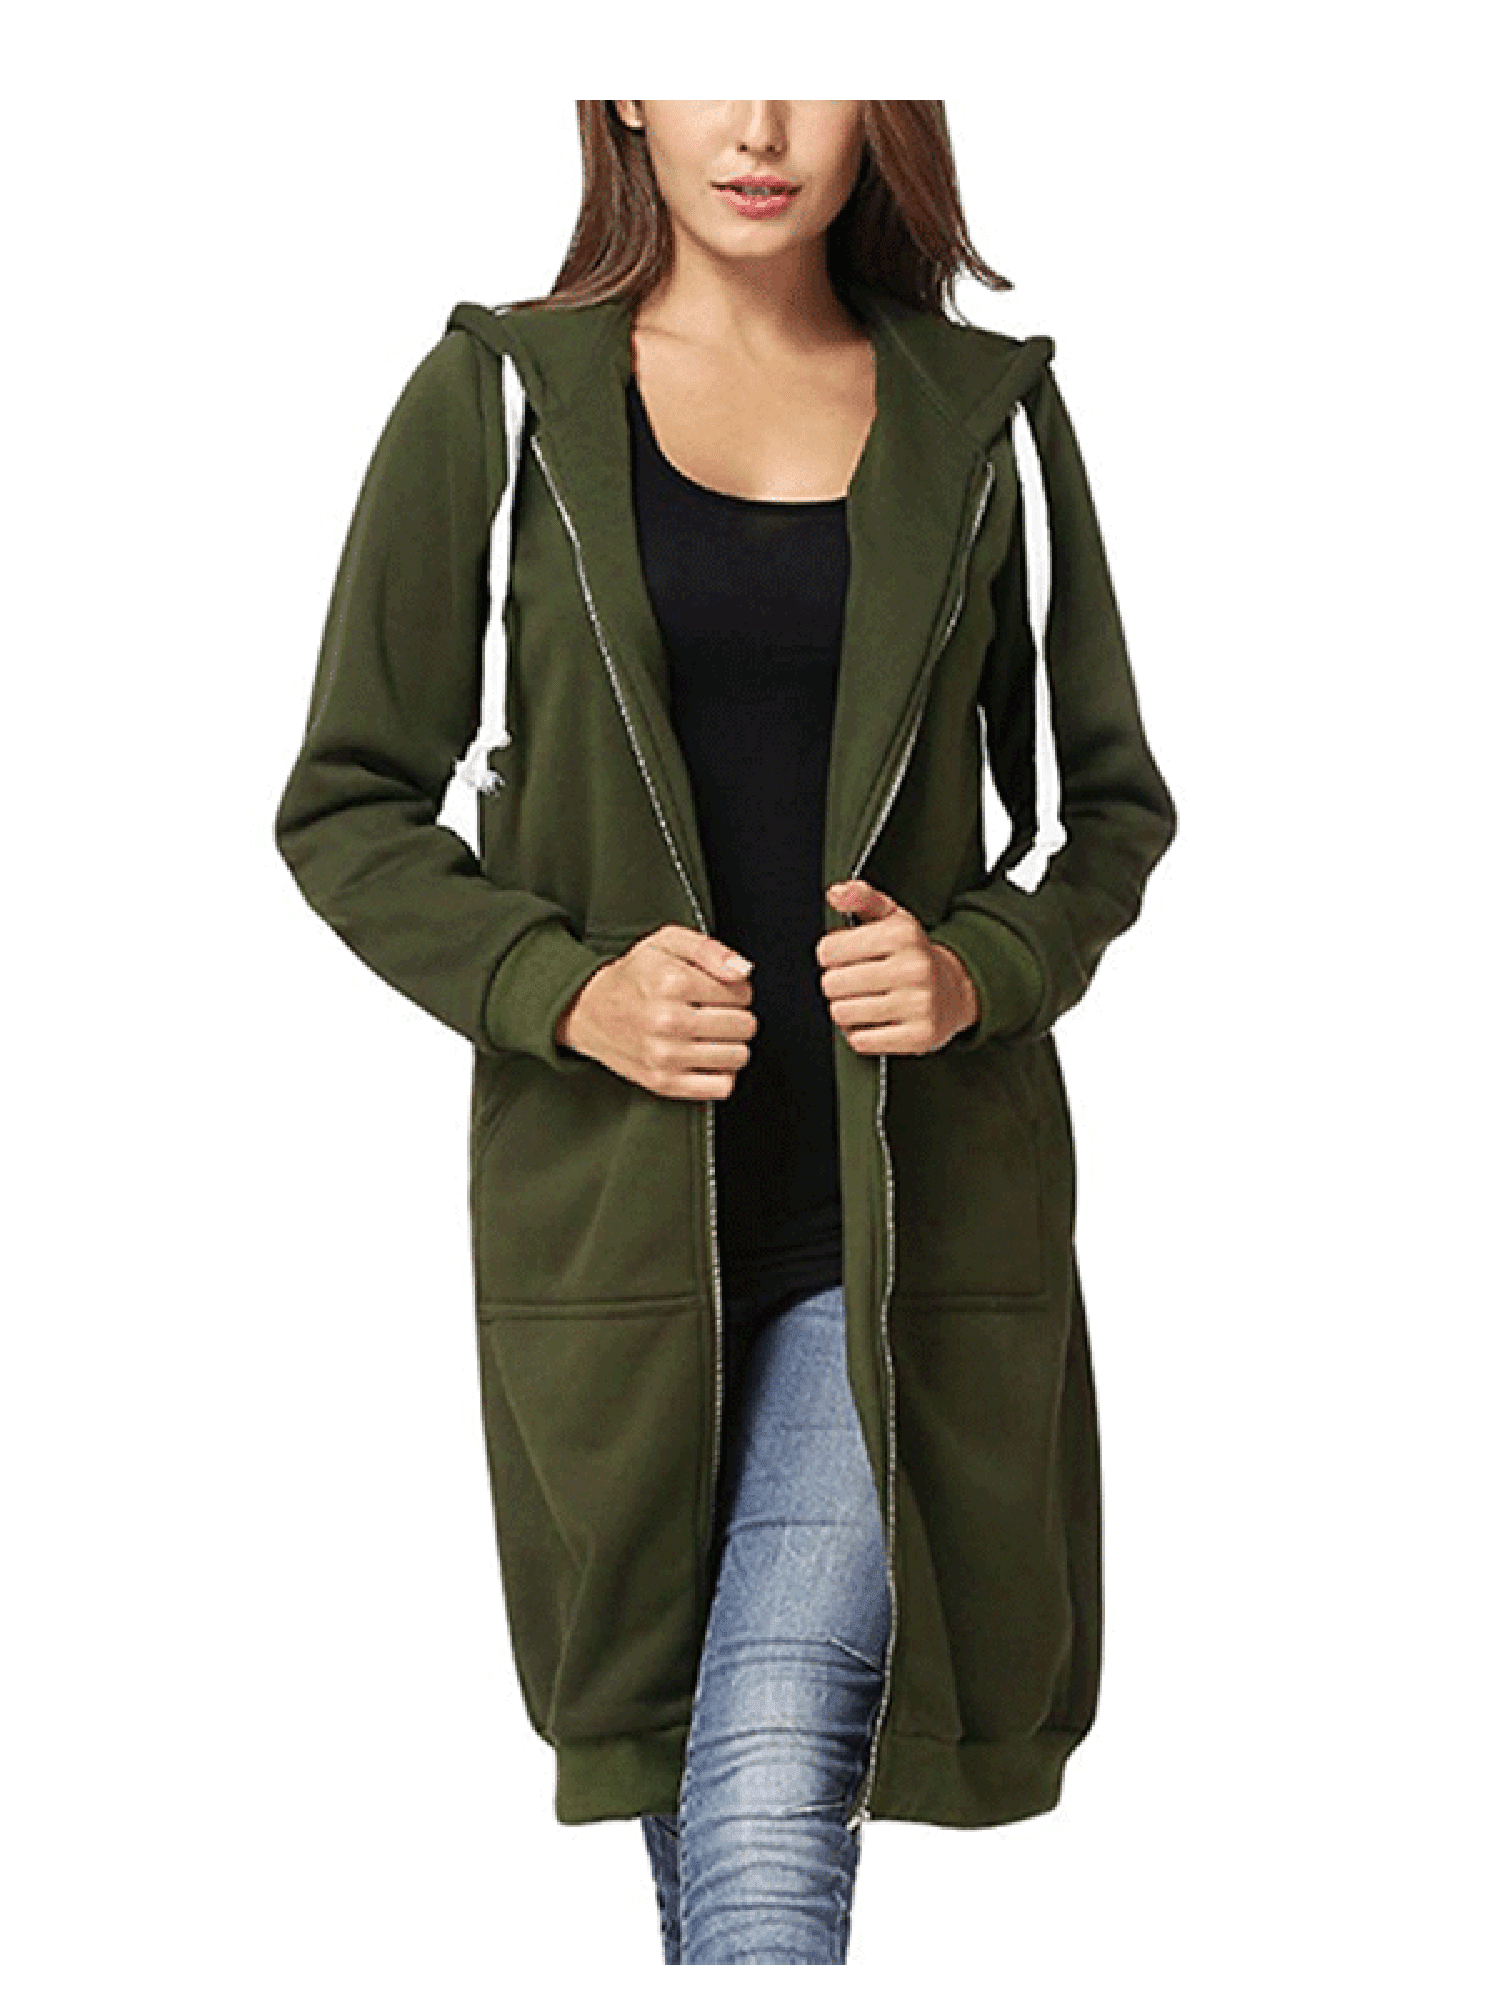 New Star - Newstar Zip Up Hoodies Jackets for Women, Outerwear Tops Front  Pockets Sweatshirt Coats for Women, N0248GS Long Sleeve Jackets for Women,  (Green, S-2XL) - Walmart.com - Walmart.com